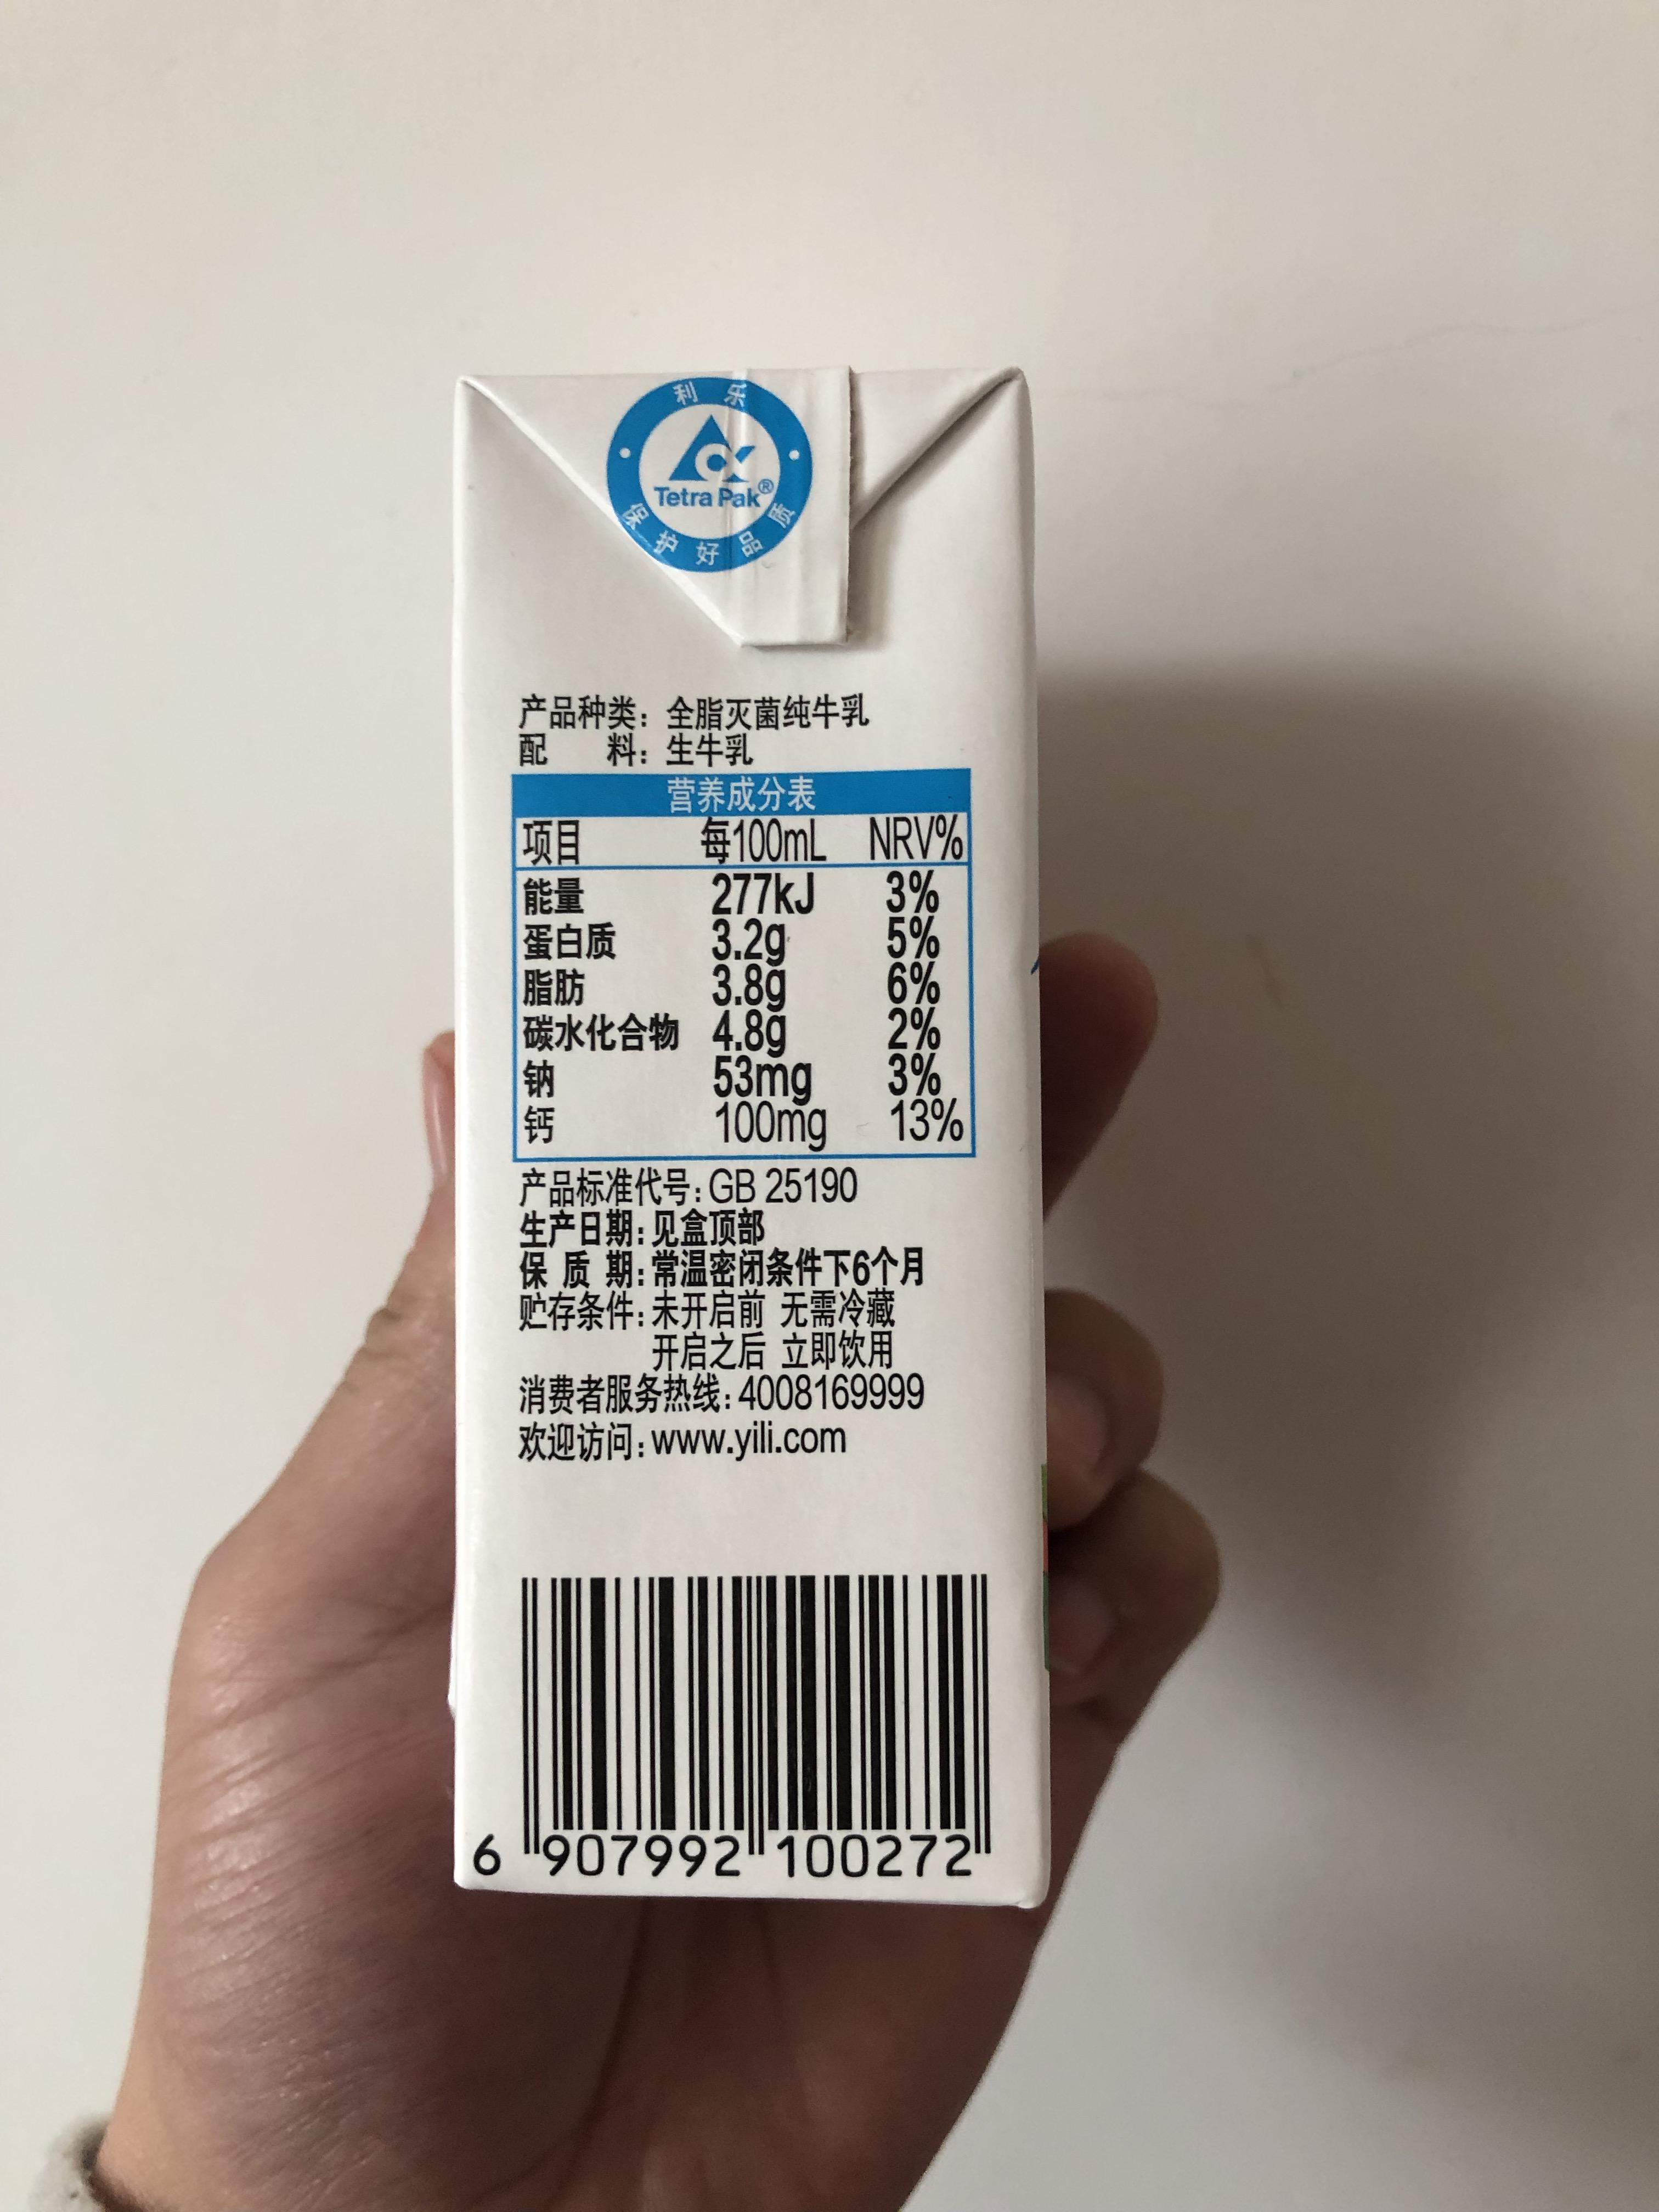 年货饮料推荐2022冬奥会合伙品牌伊利纯牛奶上手饮用体验